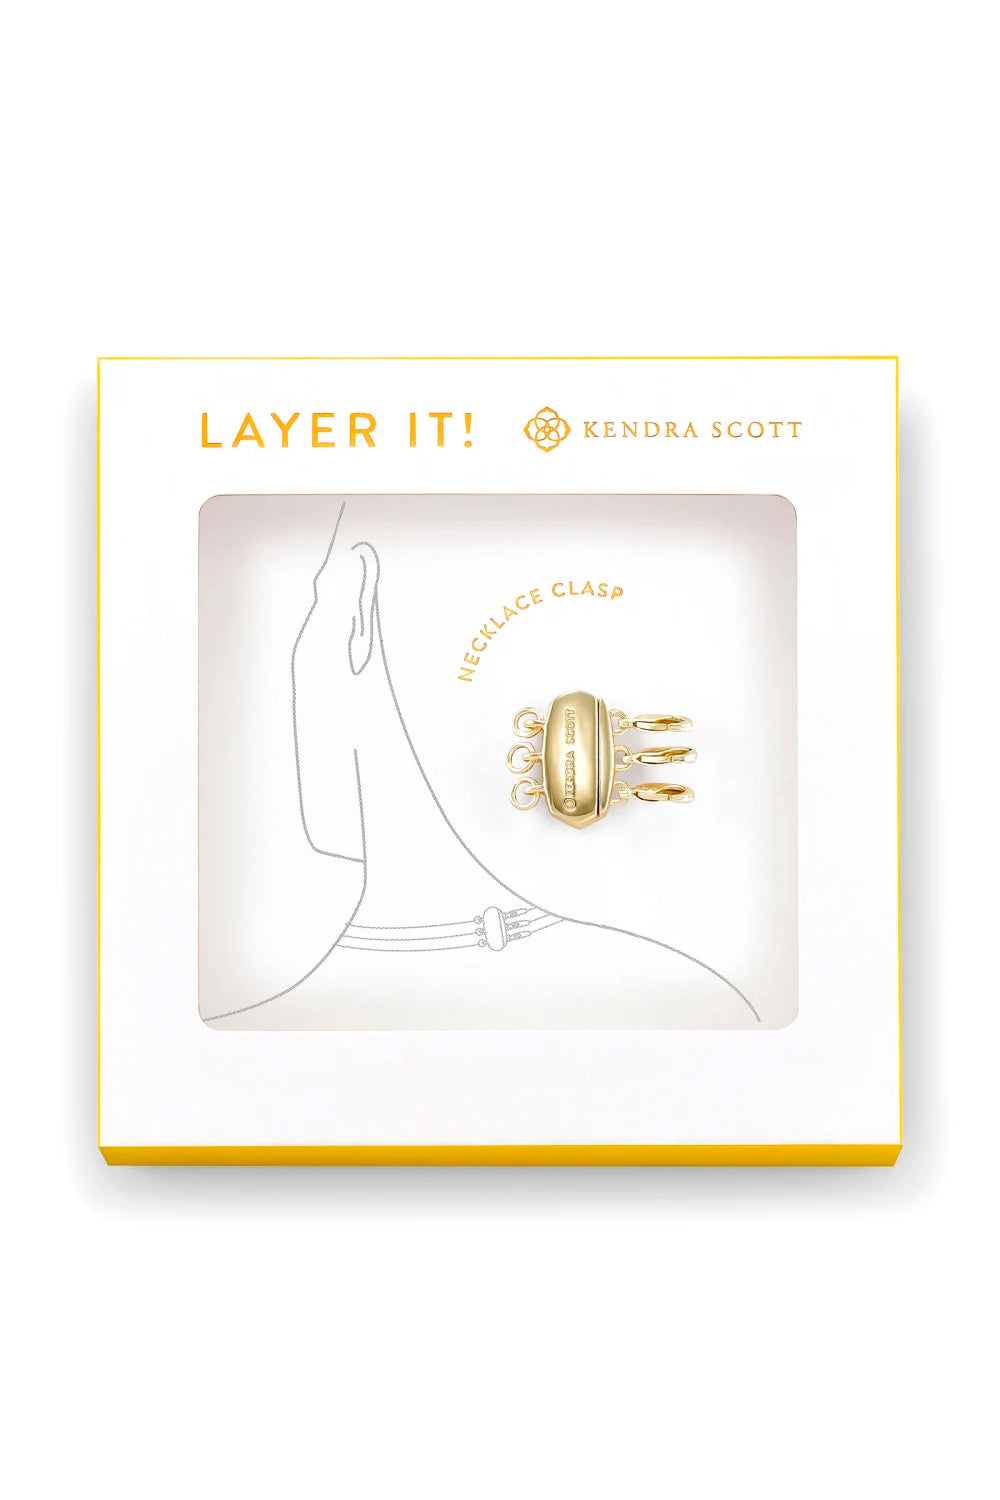 Kendra Scott: Layer It! Necklace Clasp - Gold | Makk Fashions